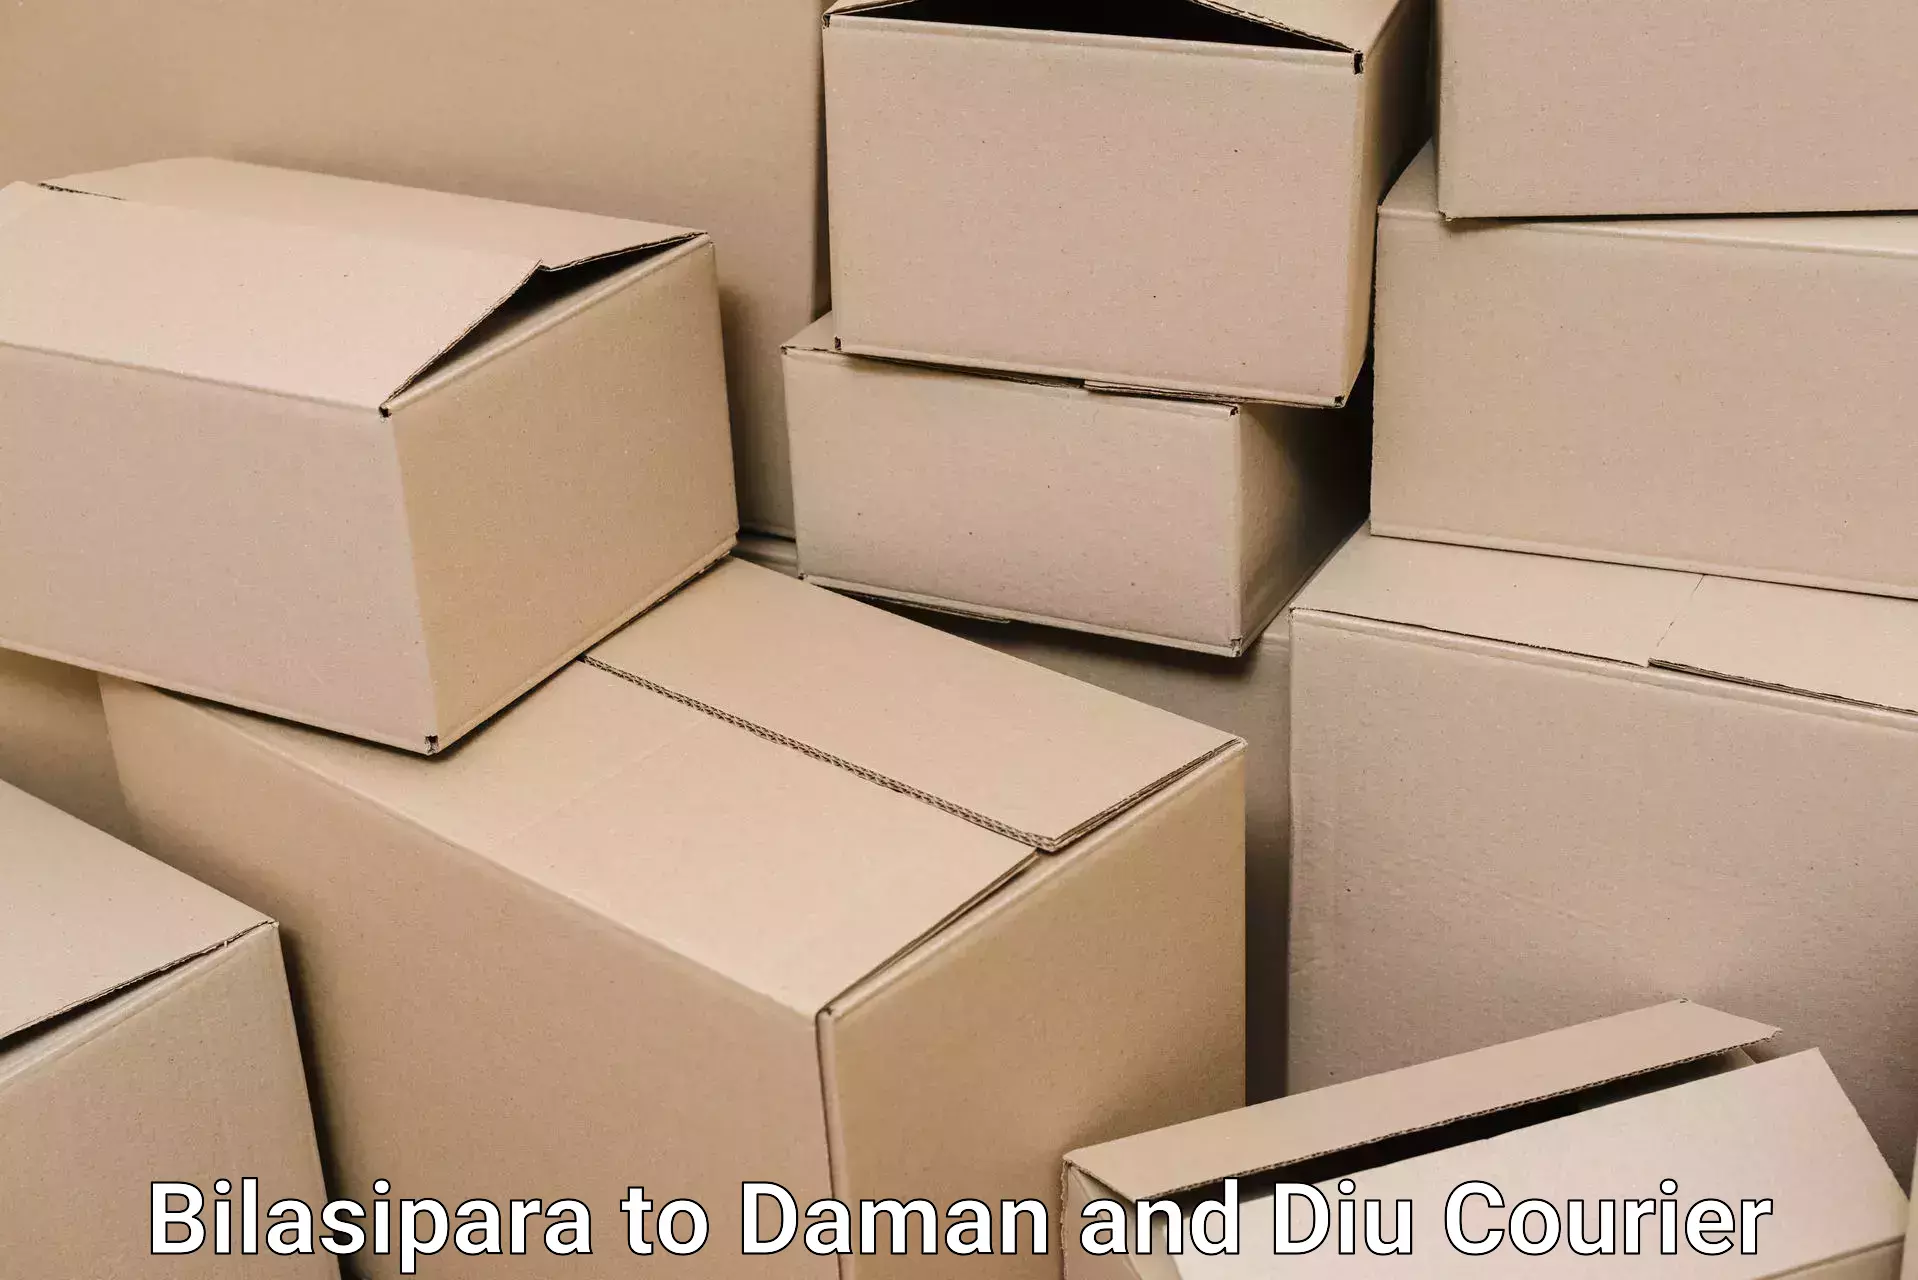 Furniture moving services in Bilasipara to Diu